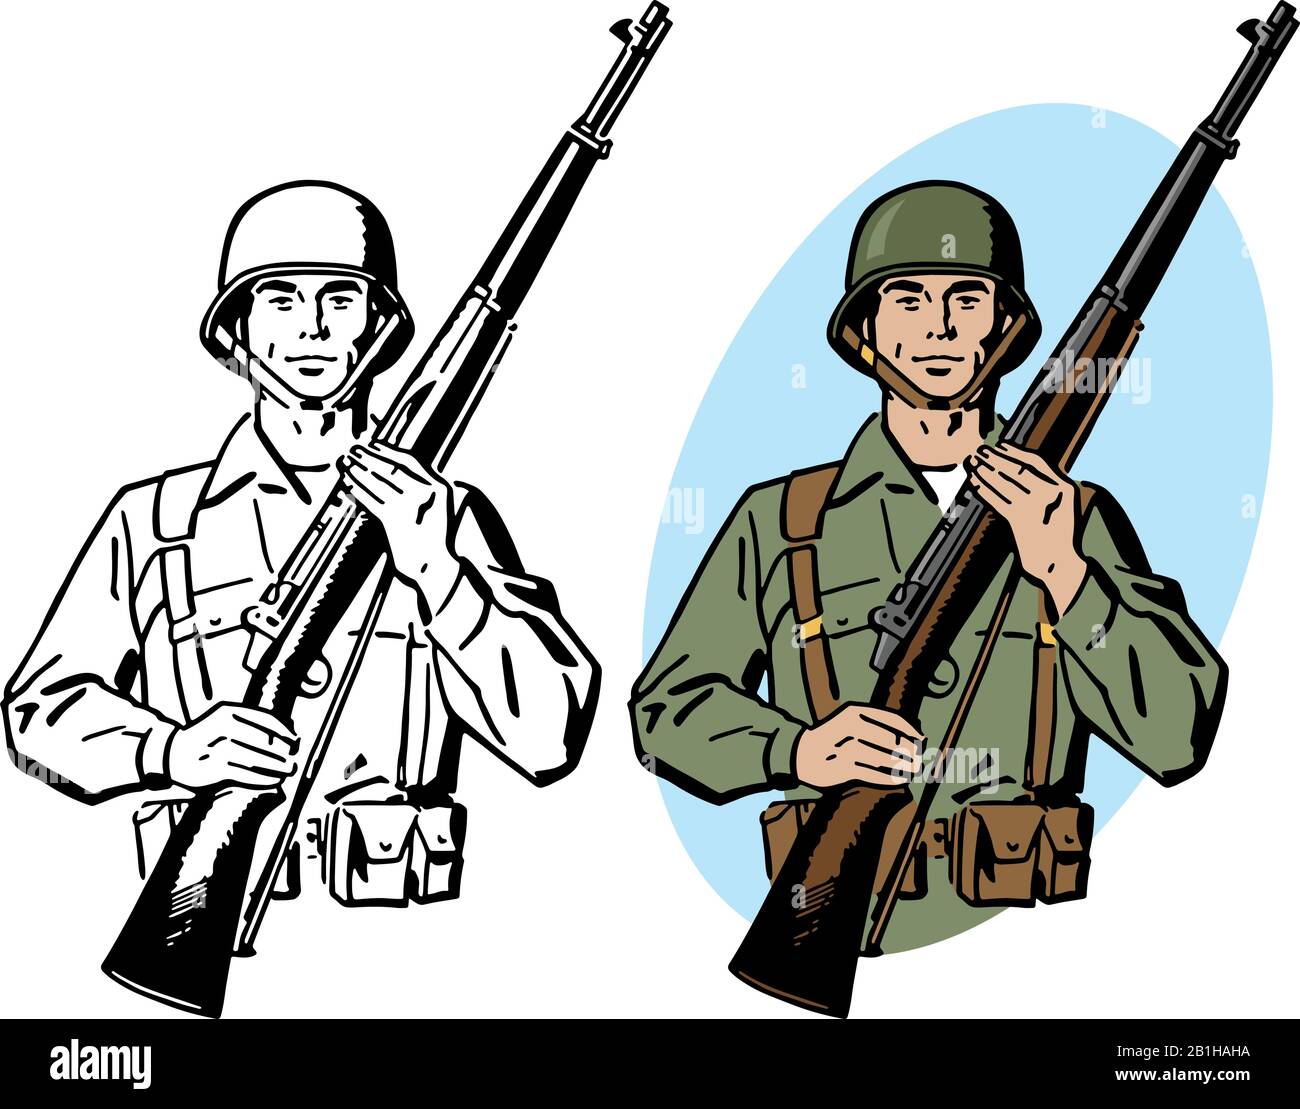 Dibujo De Un Soldado Del Ejército De La Segunda Guerra Mundial